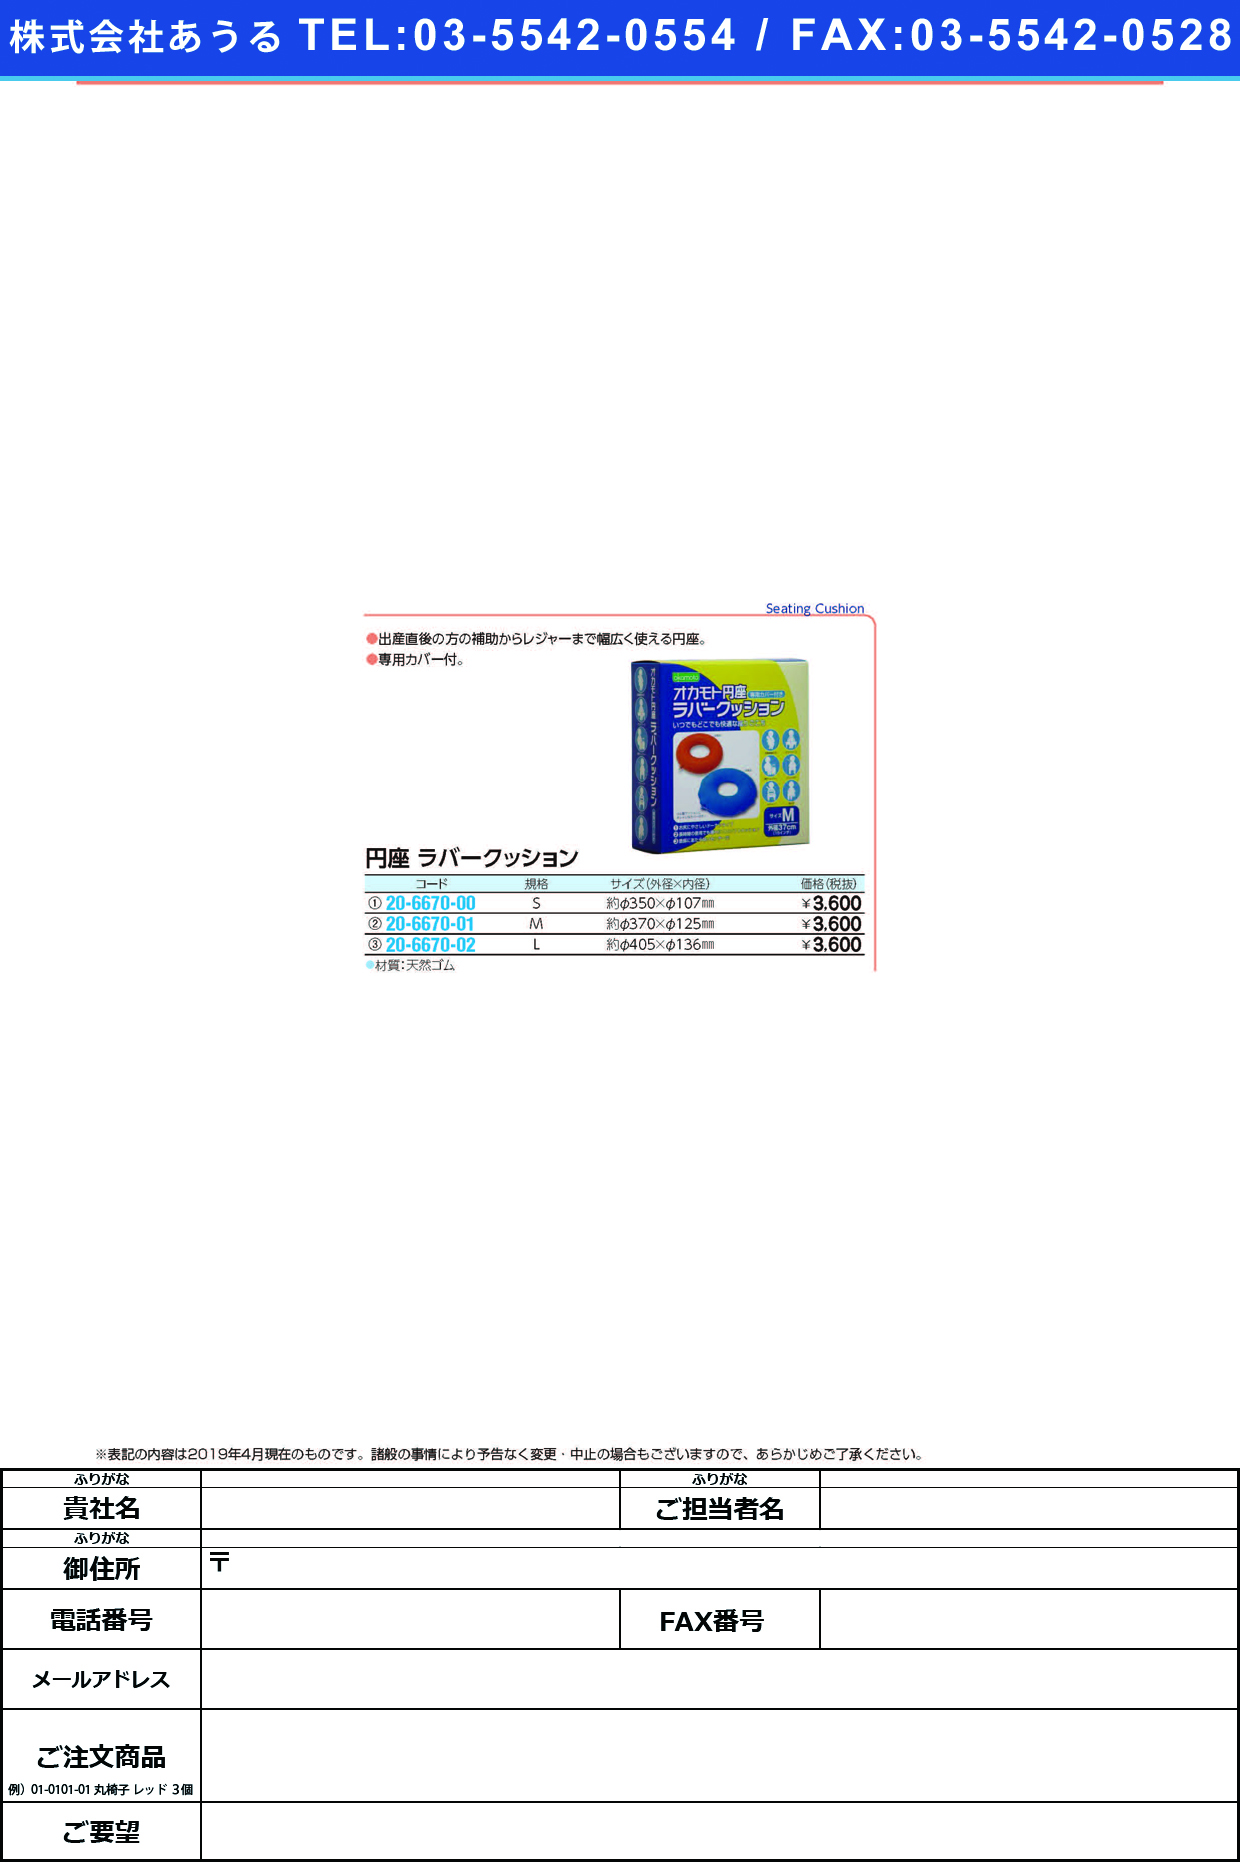 (20-6670-01)オカモト円座ラバークッション Mｻｲｽﾞ ｵｶﾓﾄｴﾝｻﾞﾗﾊﾞｰｸｯｼｮﾝM(オカモト)【1個単位】【2019年カタログ商品】